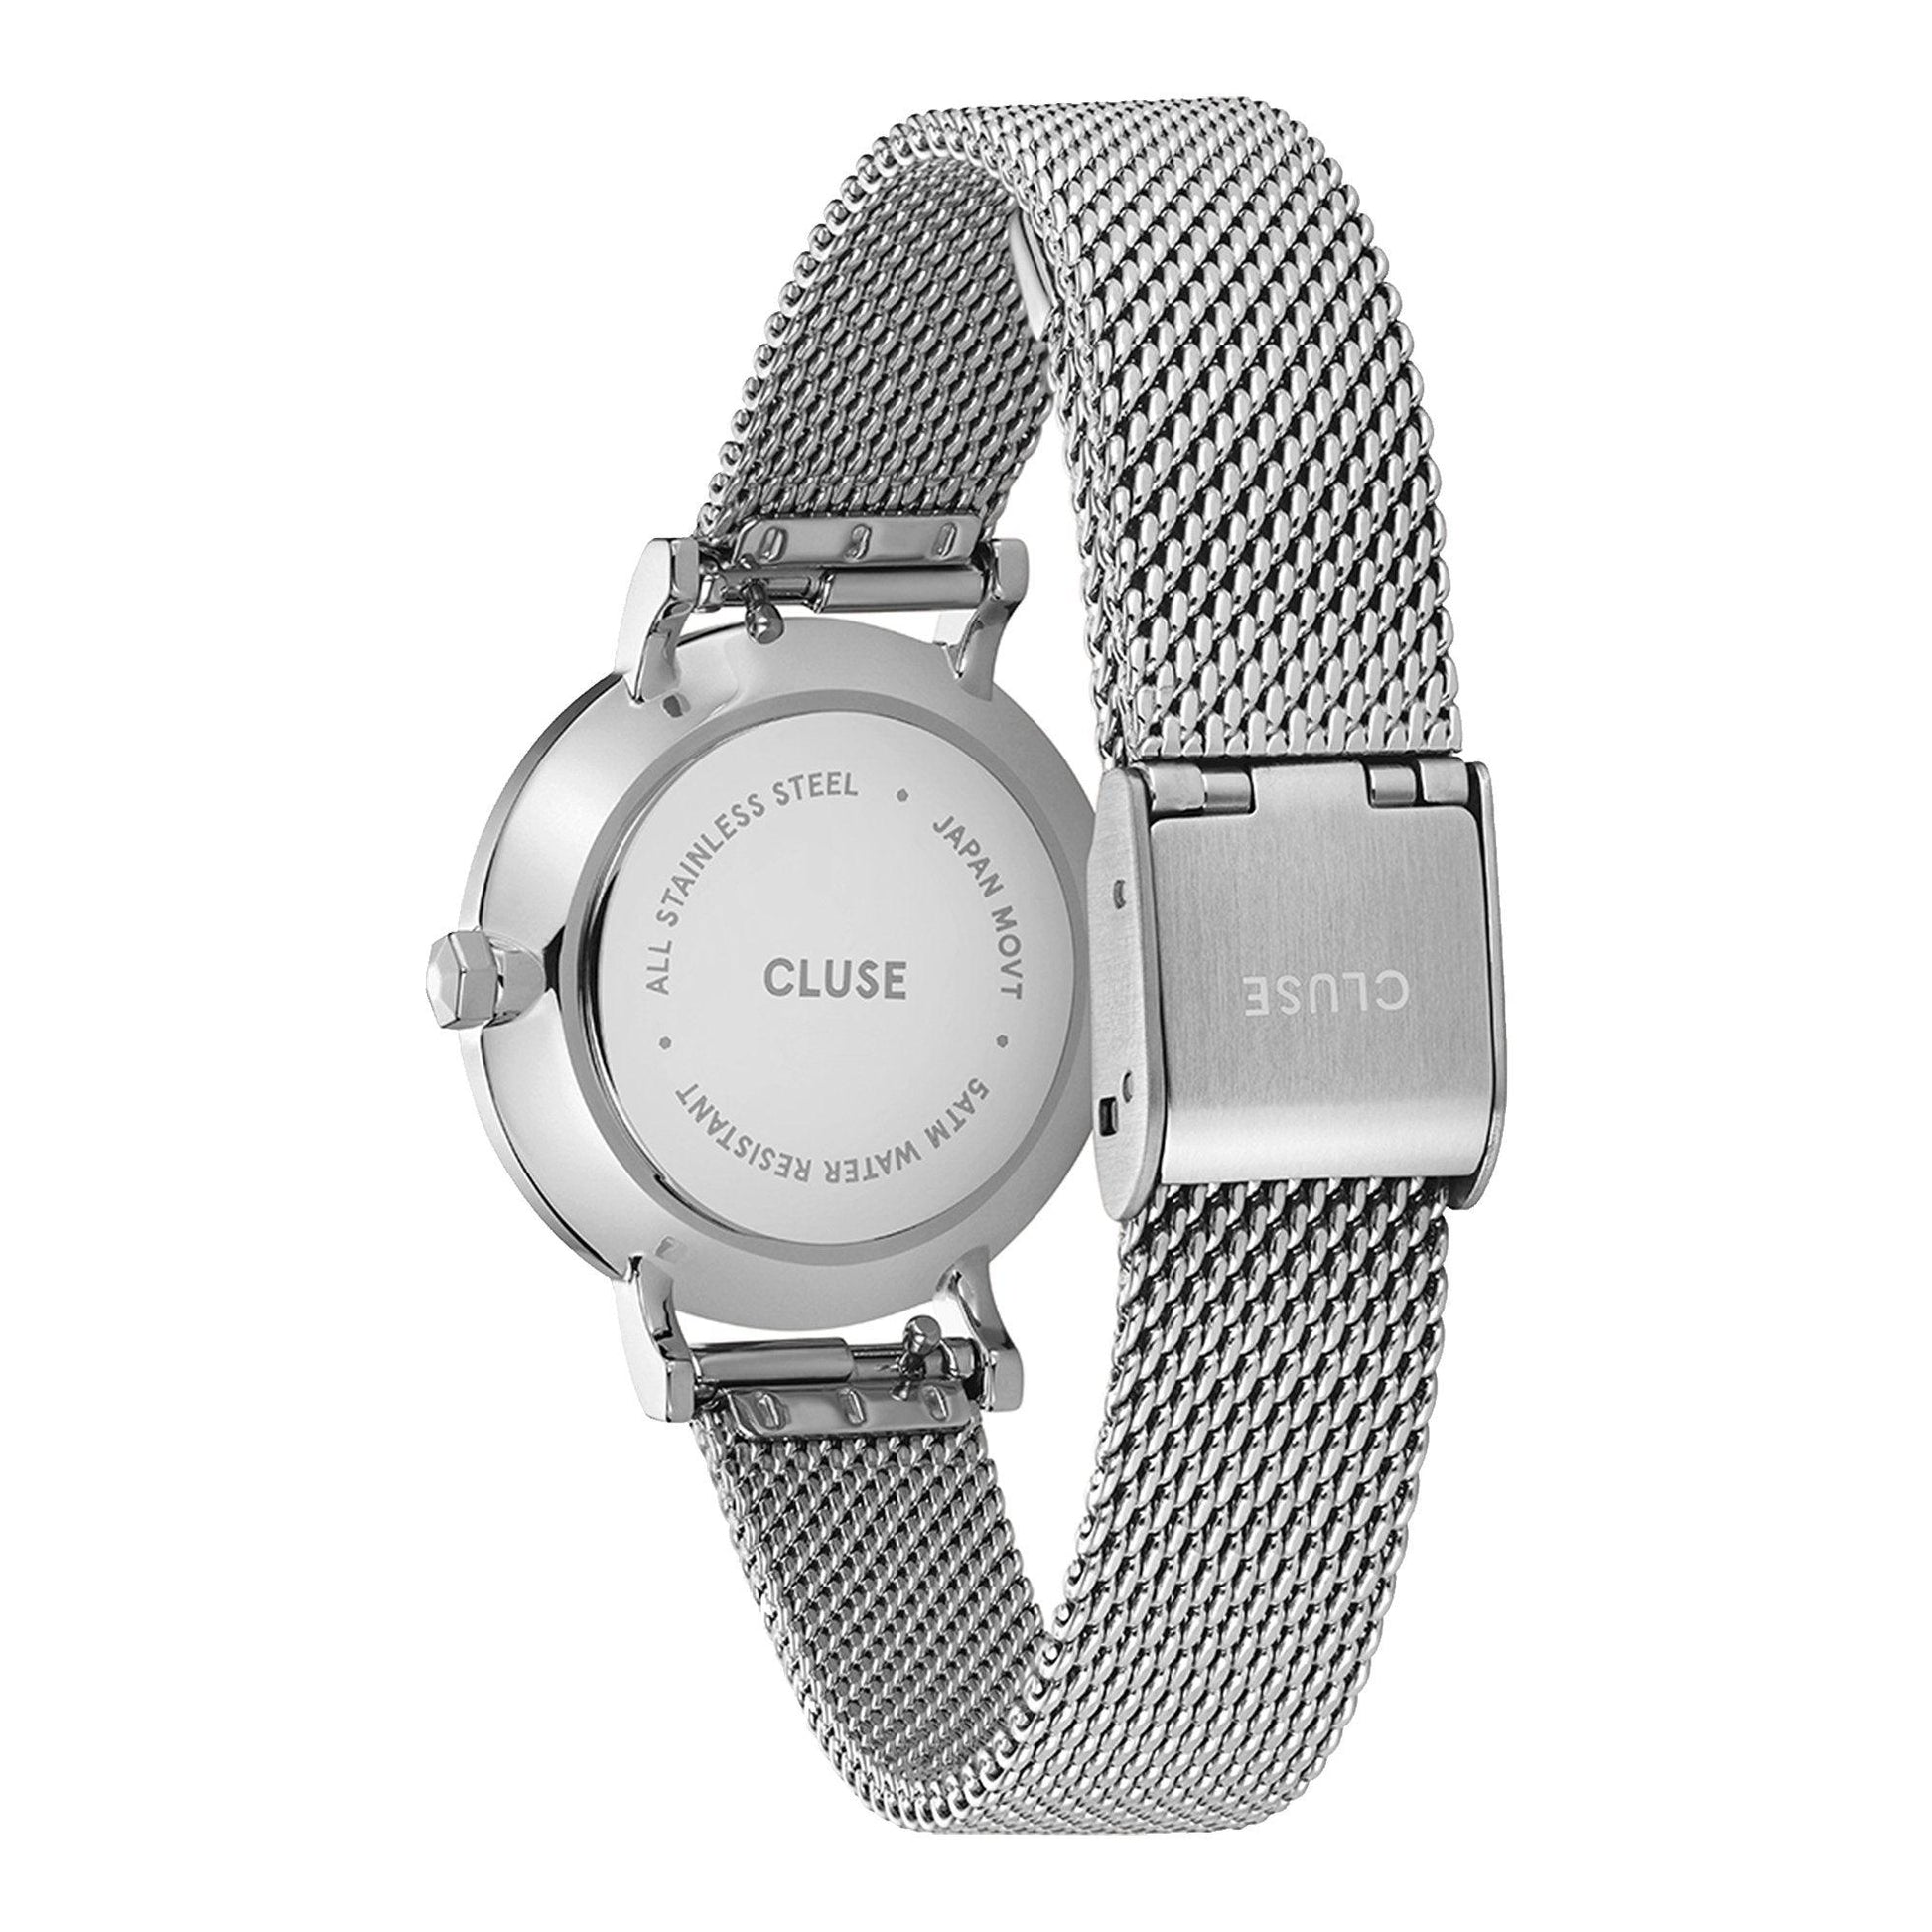 Cluse Boho Chic Petite CW10502 orologio donna al quarzo - Kechiq Concept Boutique